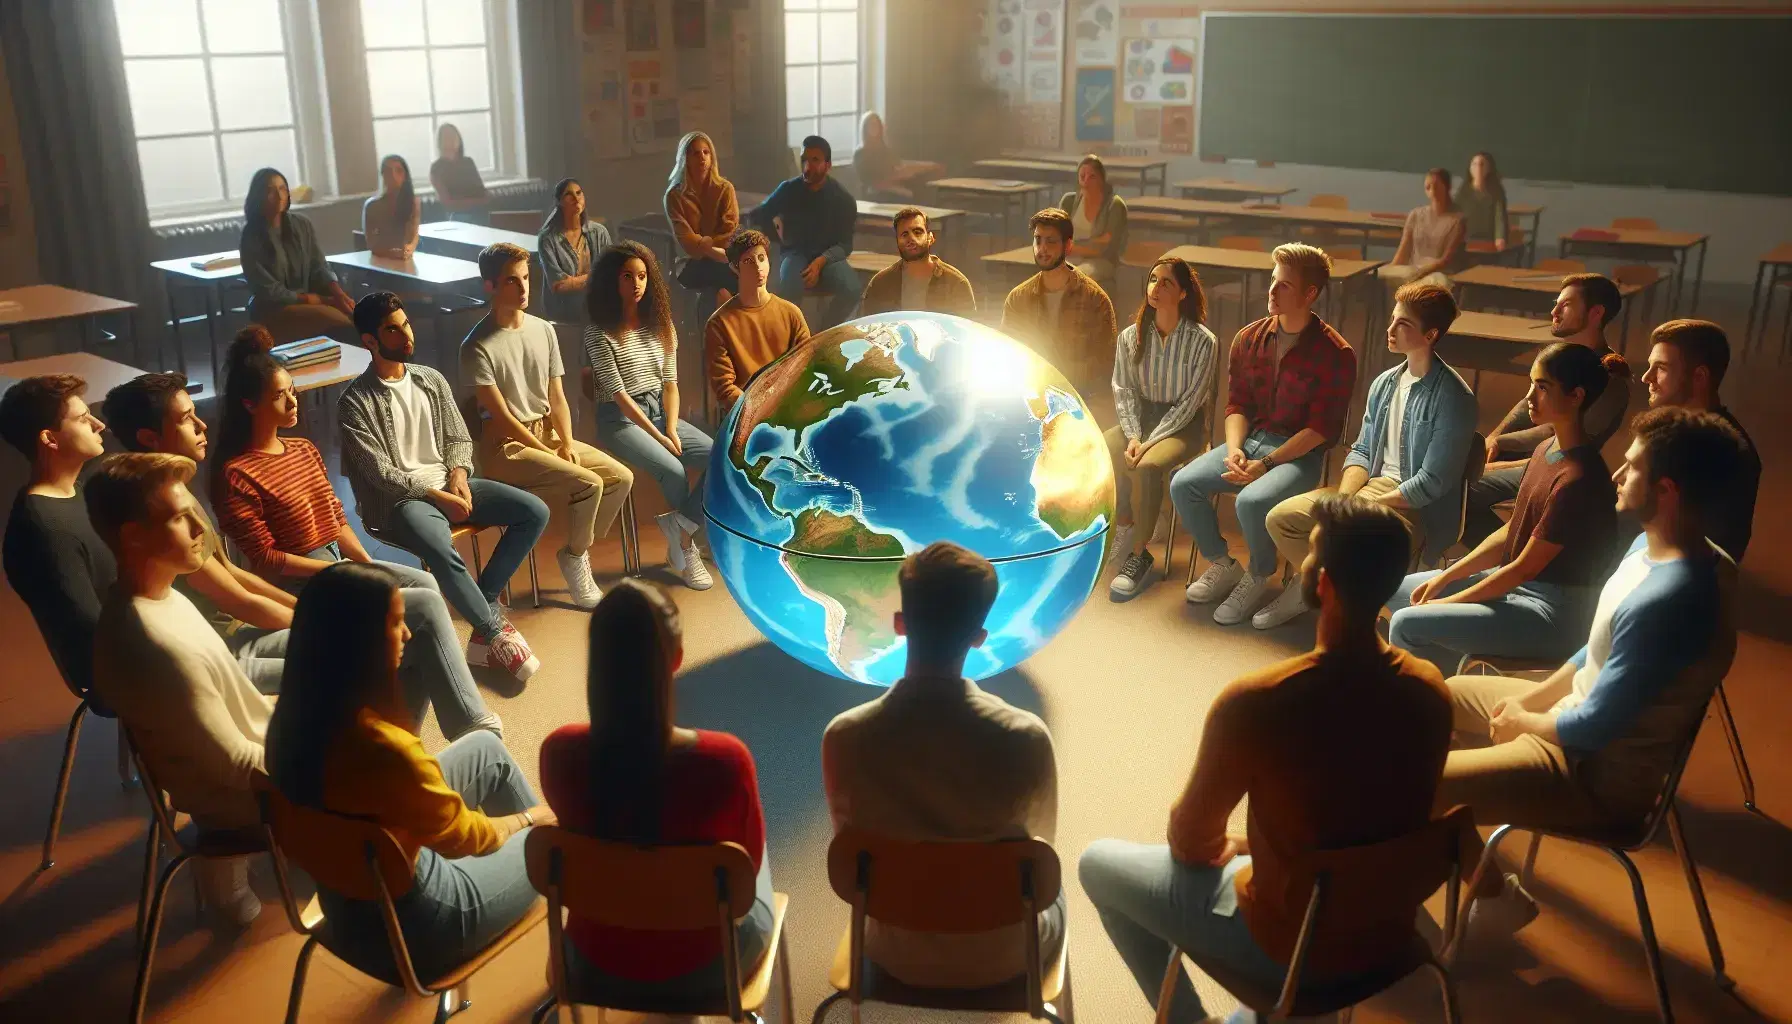 Grupo diverso de estudiantes sentados en círculo en un aula con un globo terráqueo en el centro, mostrando interés en la explicación de un compañero.